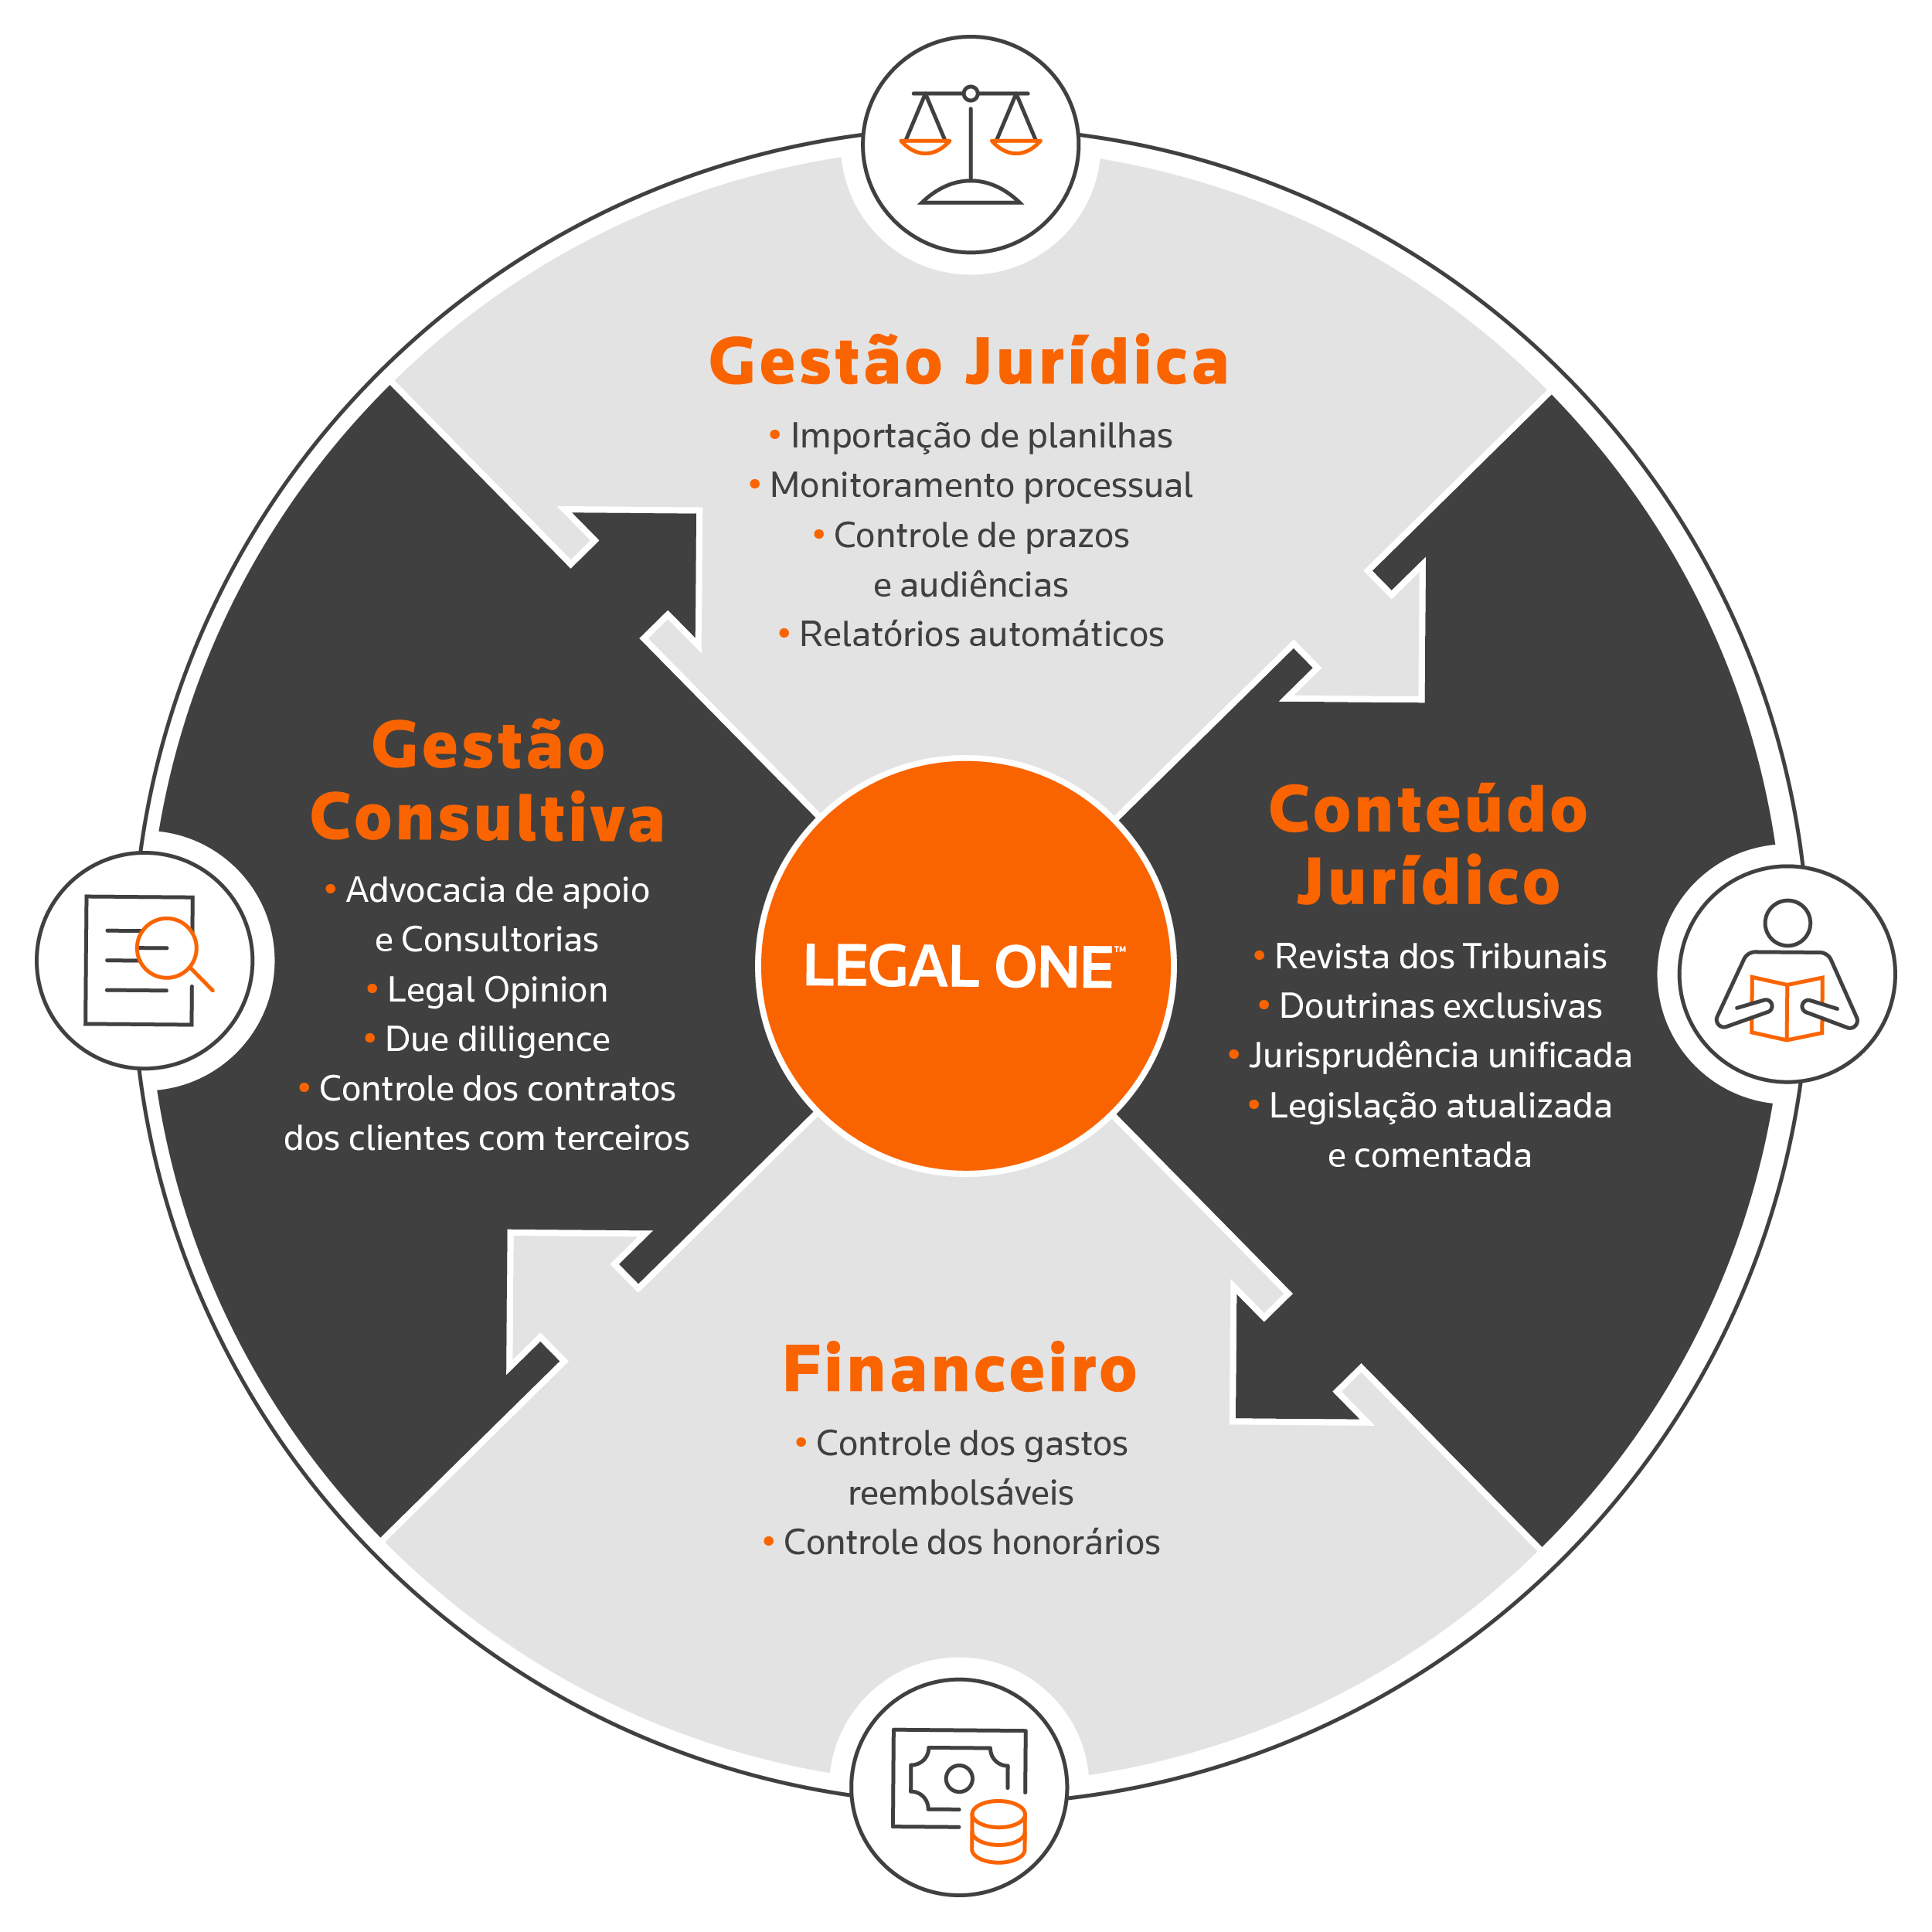 Legal One o software jurídico completo com Gestão Jurídica, Conteúdo Jurídico, Financeiro e Gestão Consultiva.